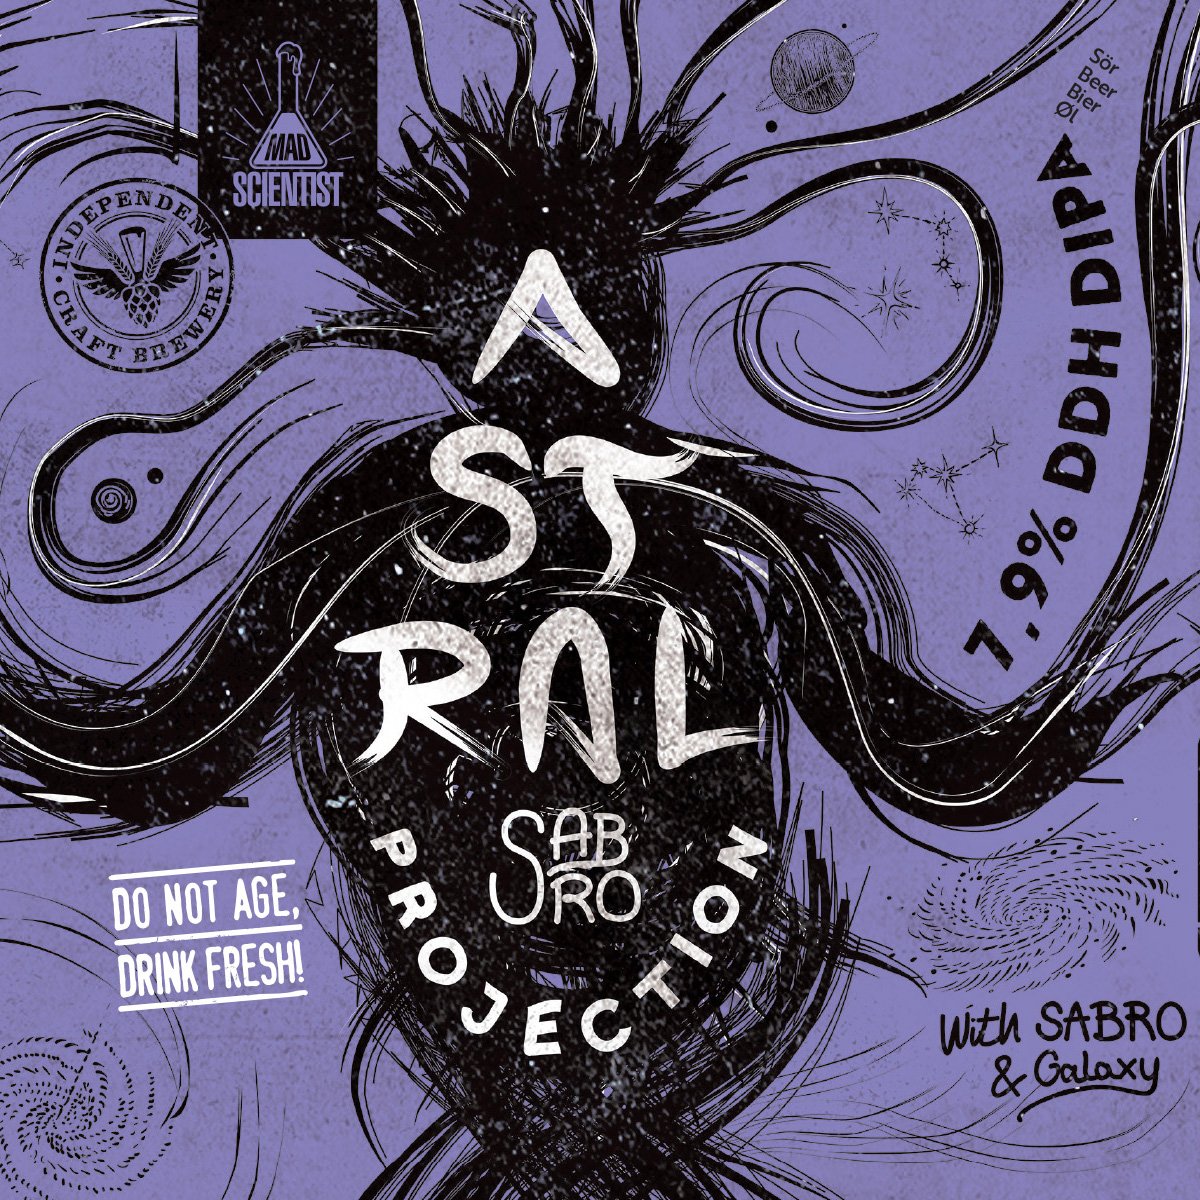 Сабро. Пиво Astral. Пиво Astral Roca. Пиво Astral Stio. Midnight Project Hop headshot: Sabro.